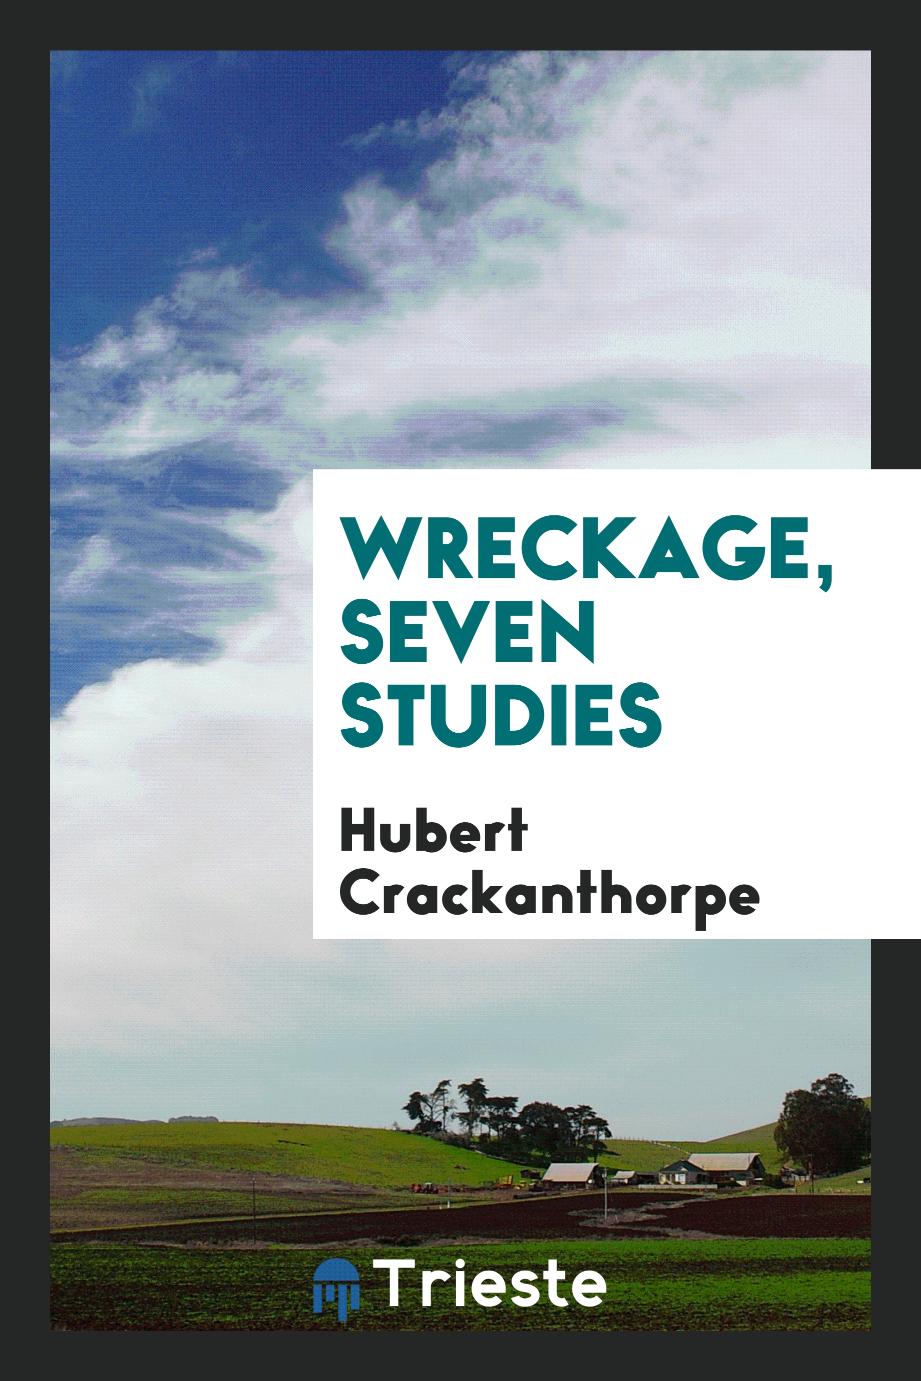 Wreckage, seven studies